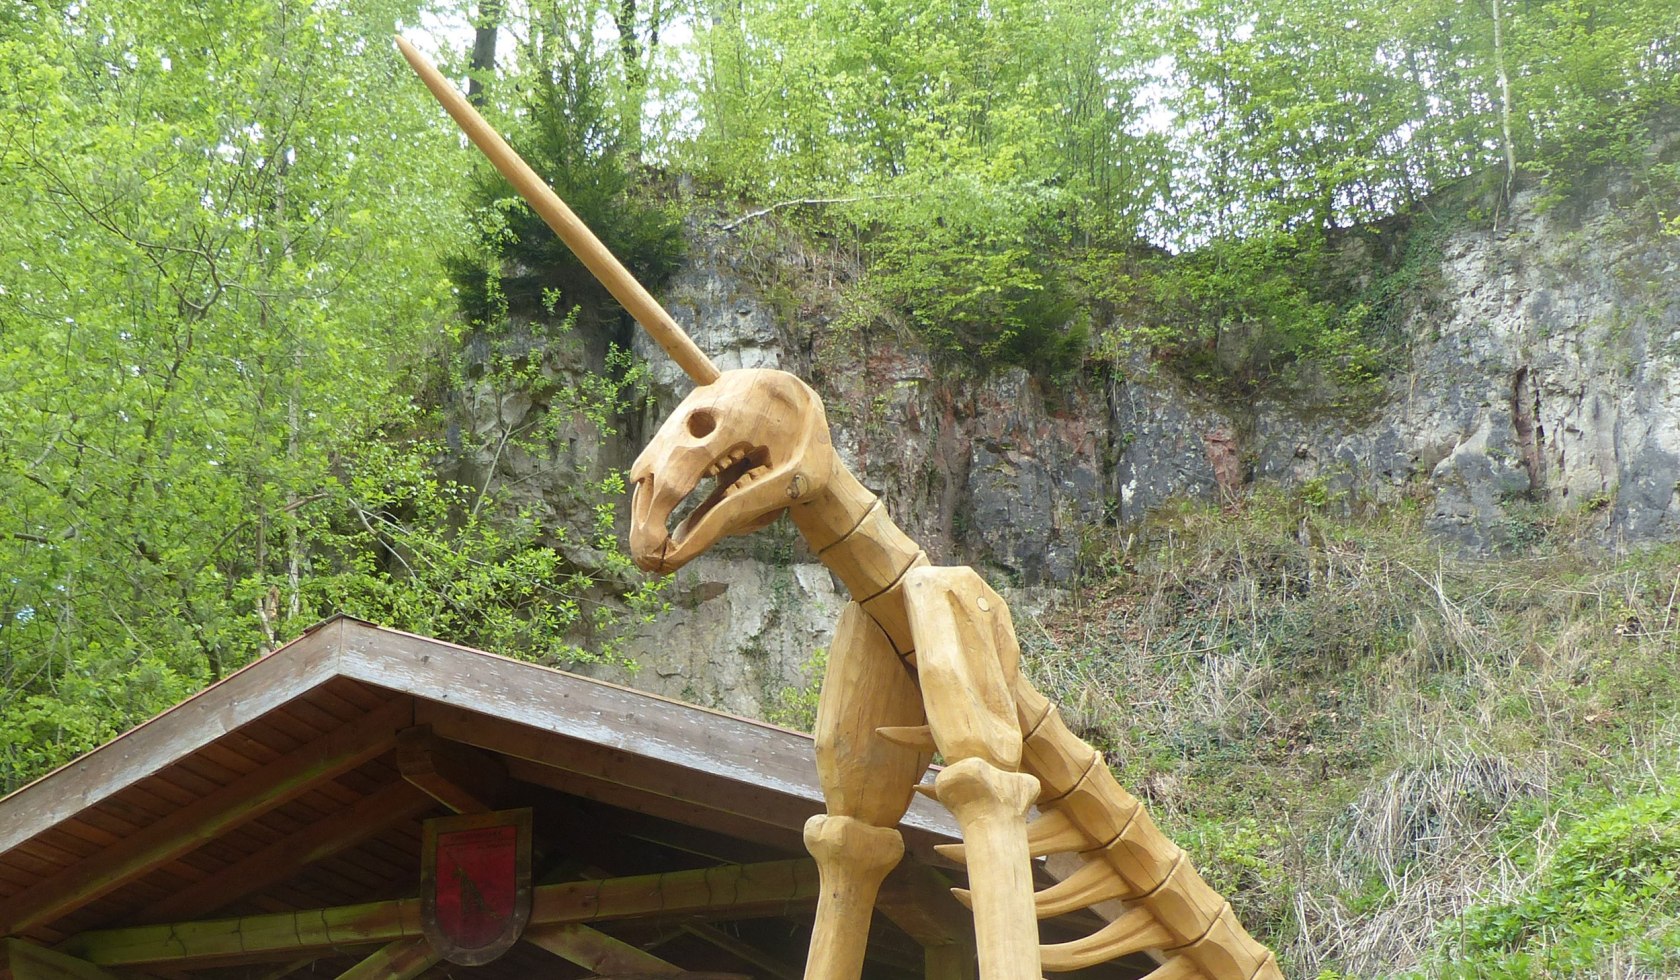 Modell eines Skelettes von einem urzeitlichen Tier, © GUF e. V./ Ralf Nielbock